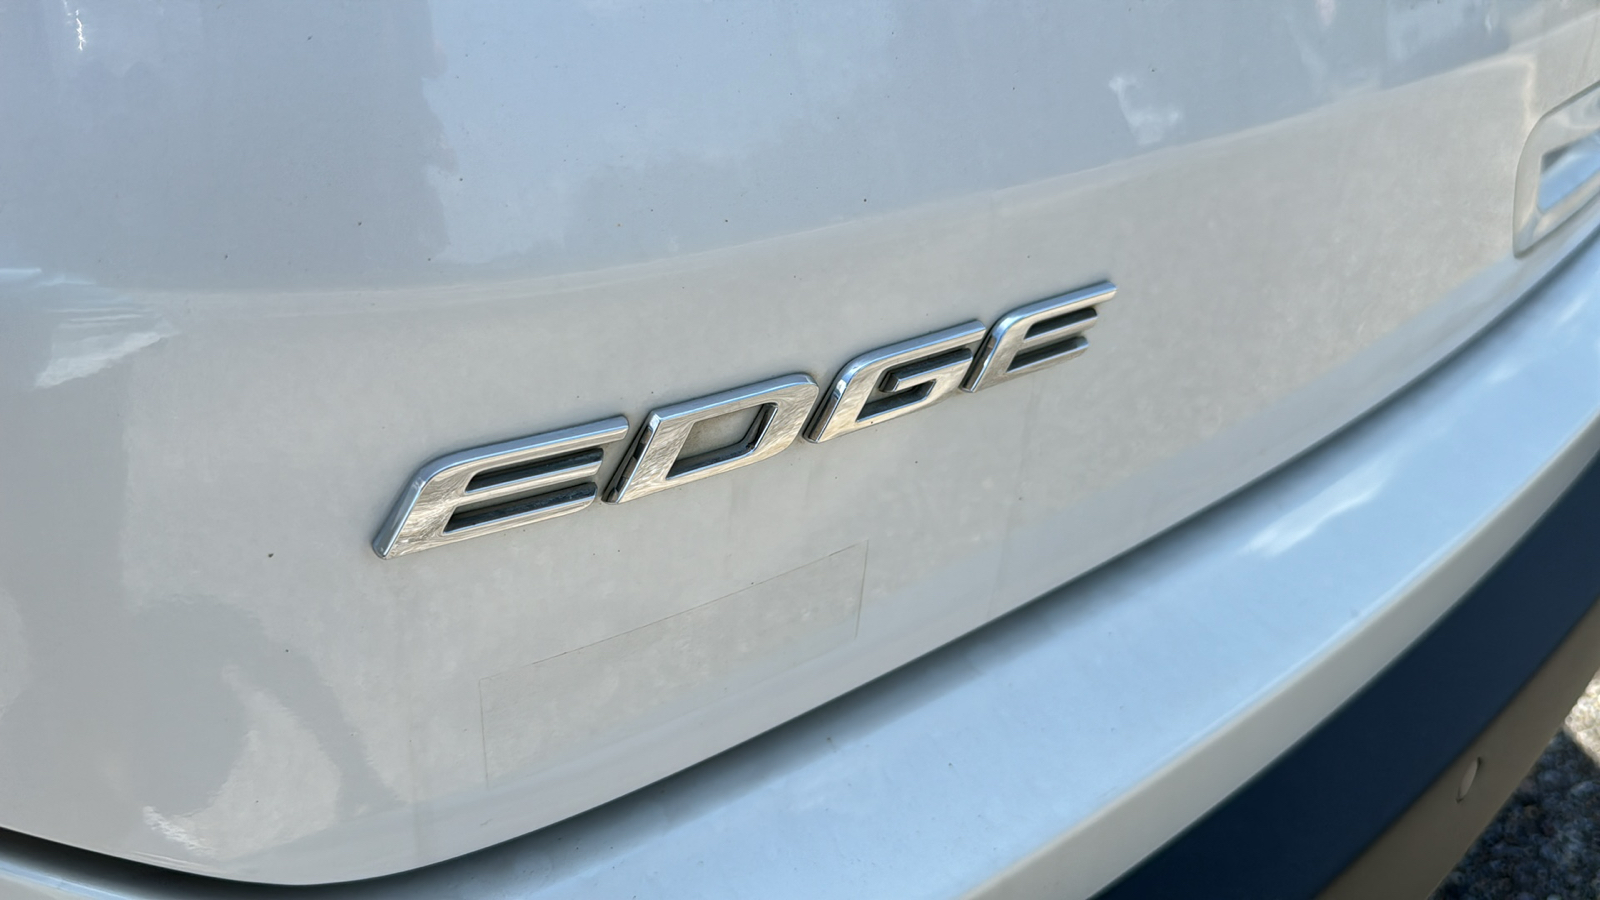 2019 Ford Edge Titanium 9